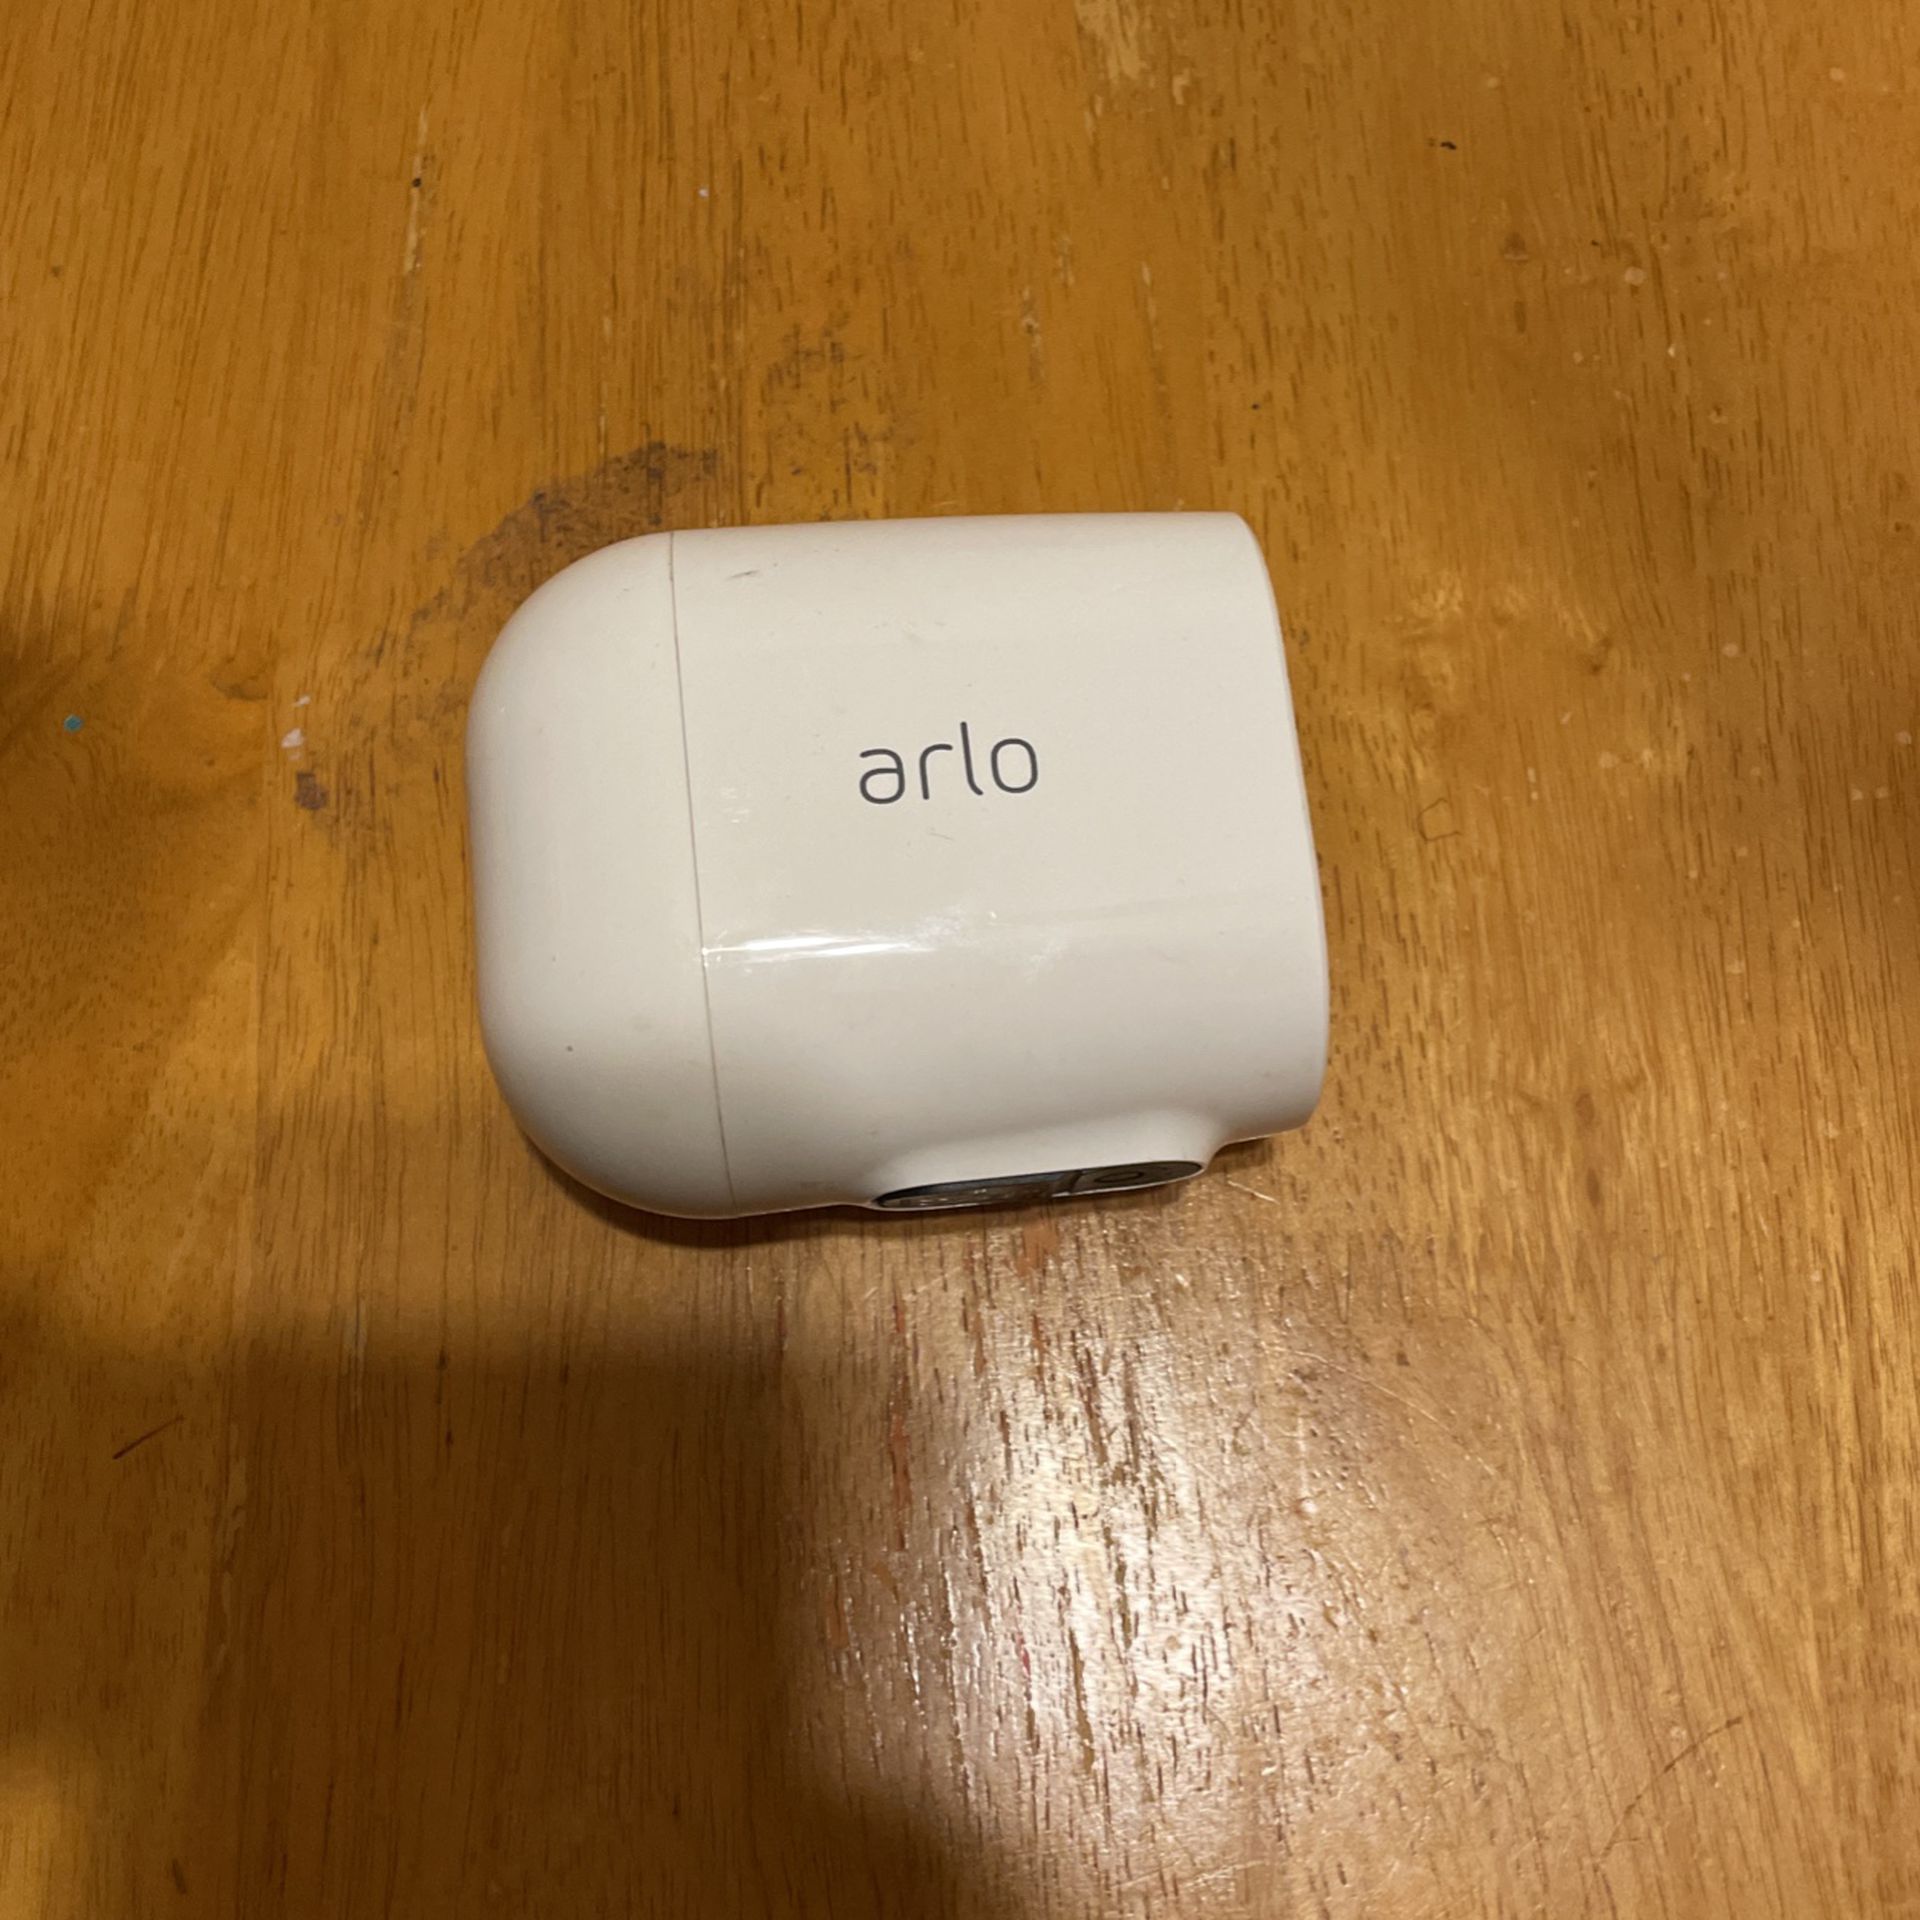 Arlo home security camera